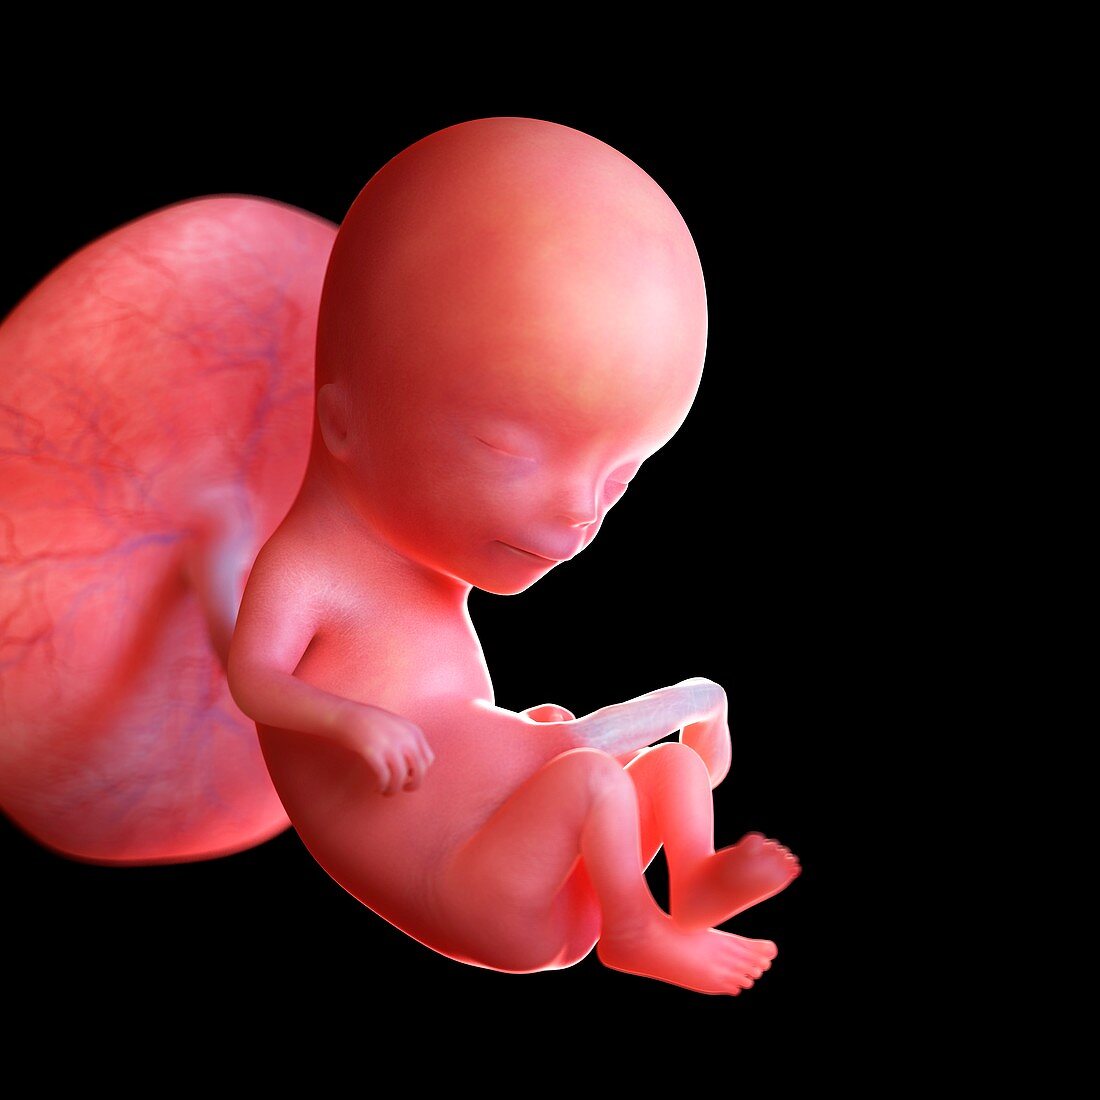 Human foetus age 12 weeks, illustration